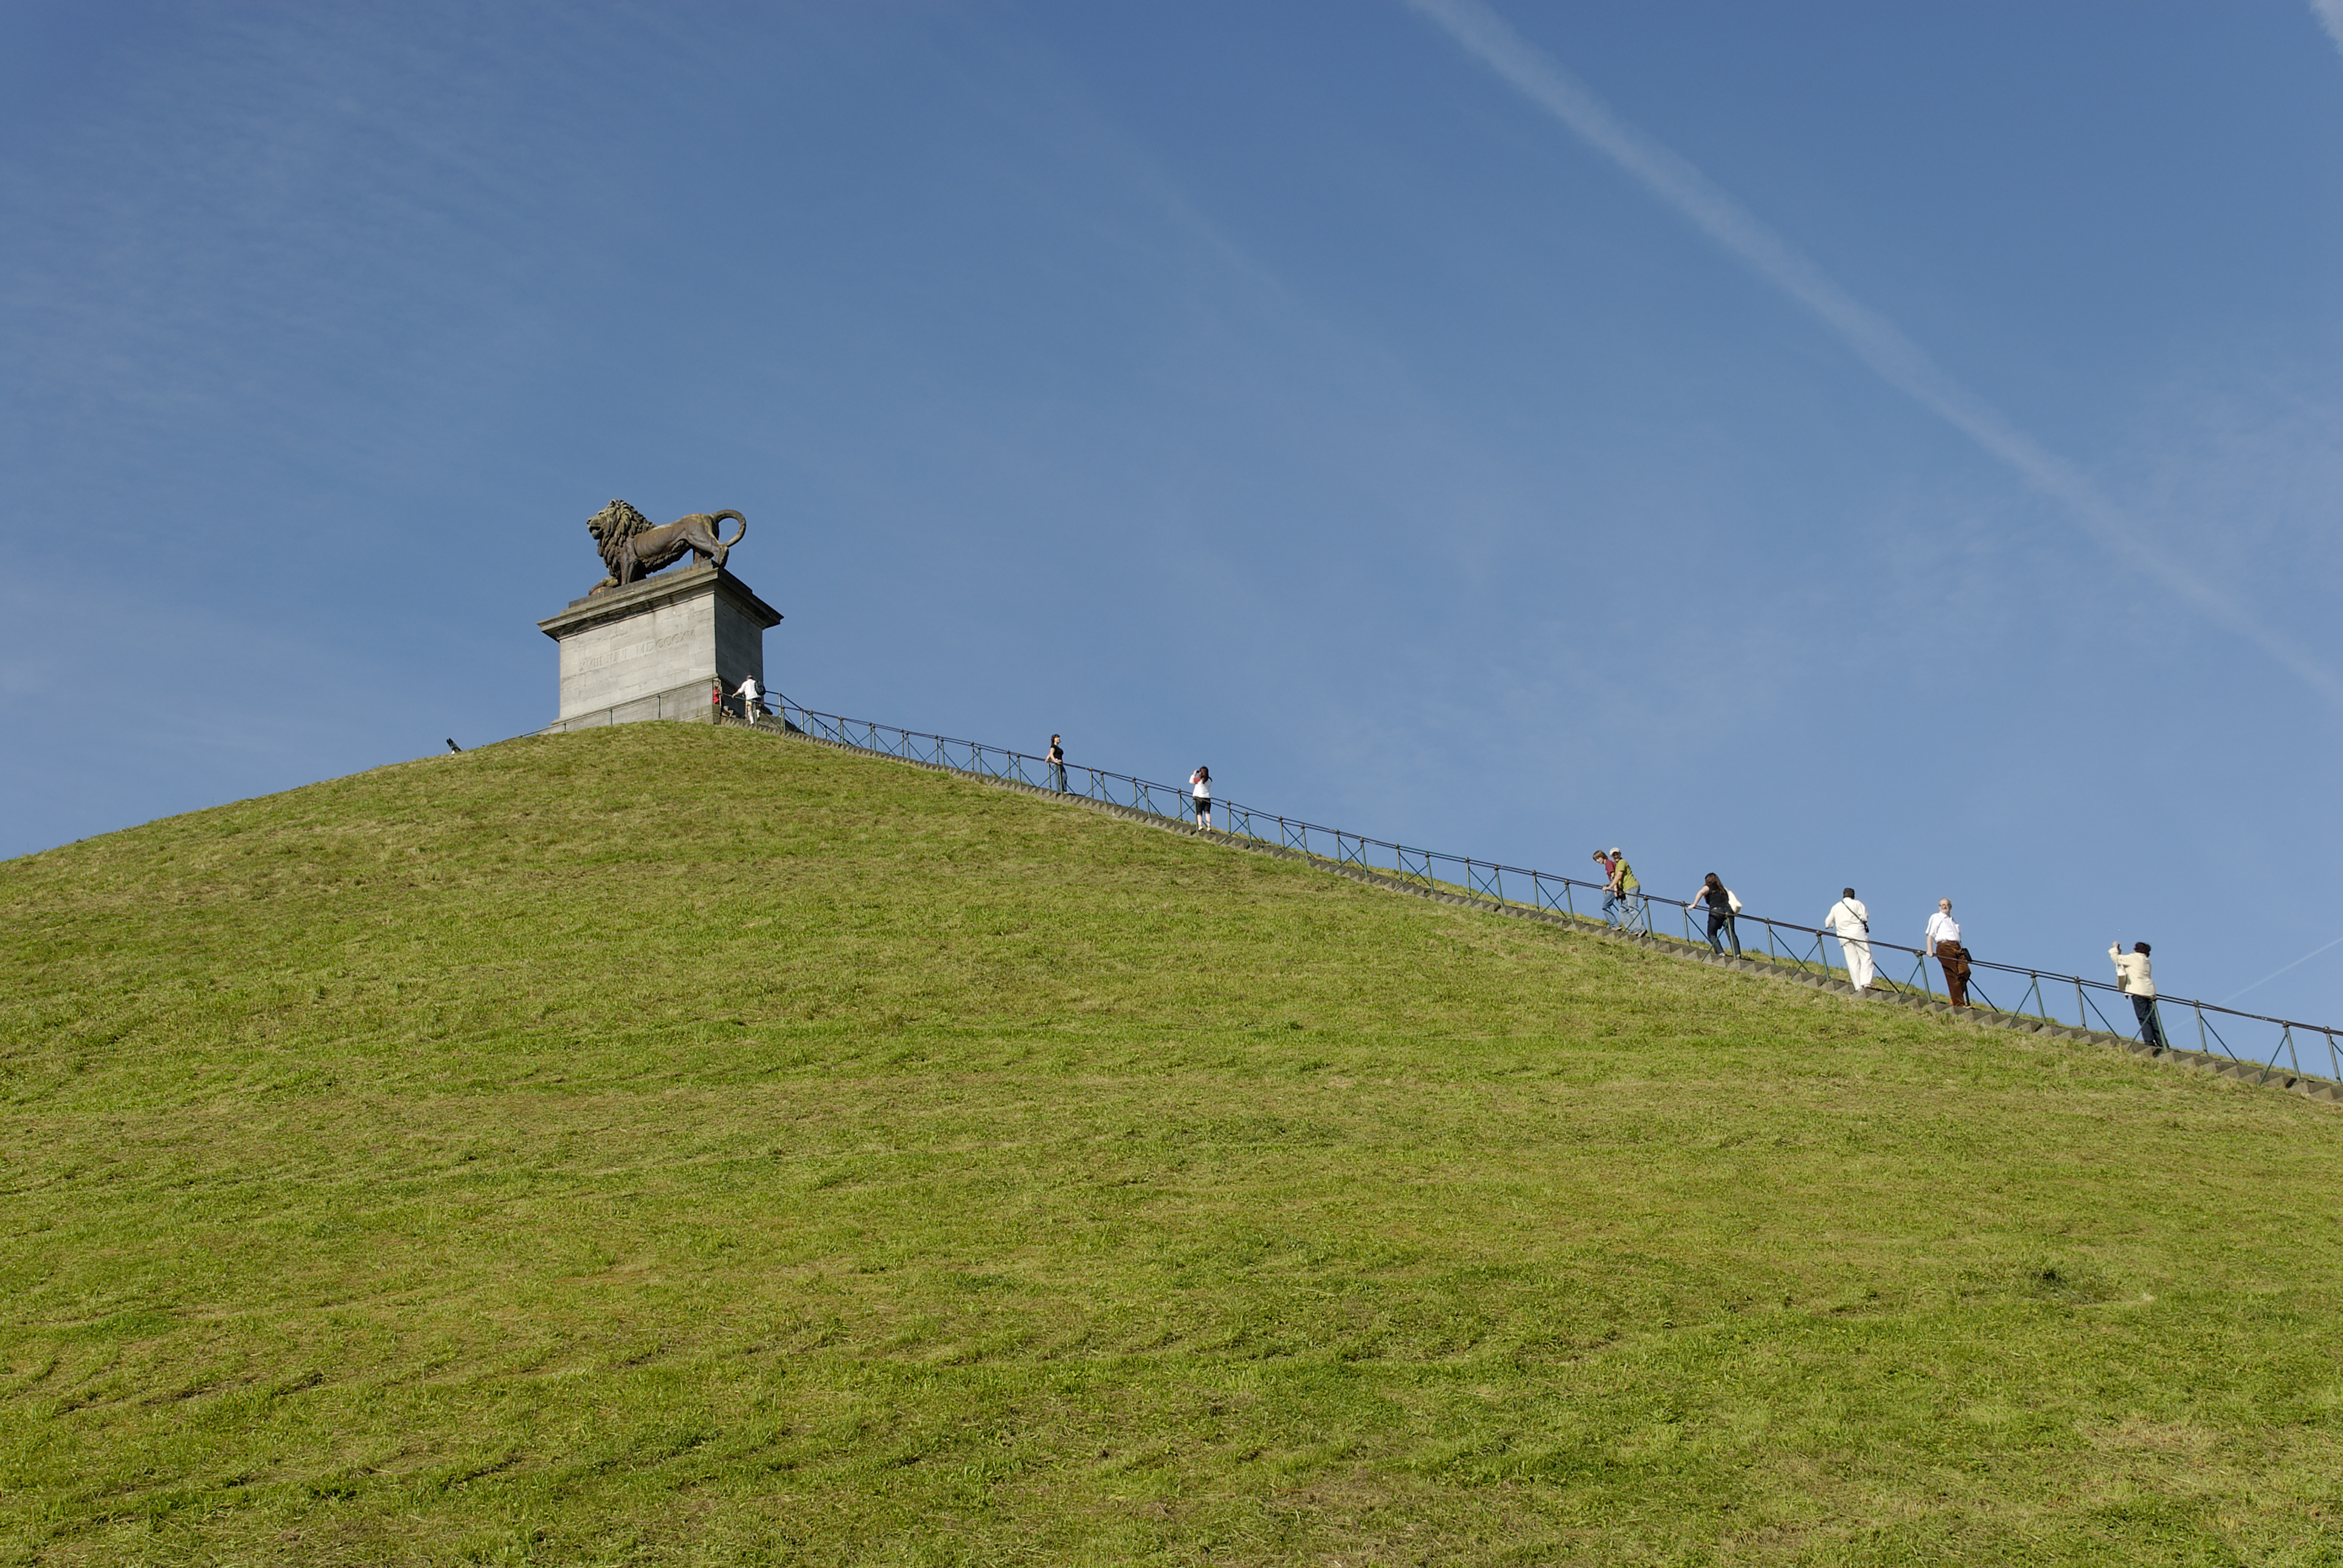 Ontdek de Heuvel met de Leeuw, herdenkingsmonument van de Slag bij Waterloo